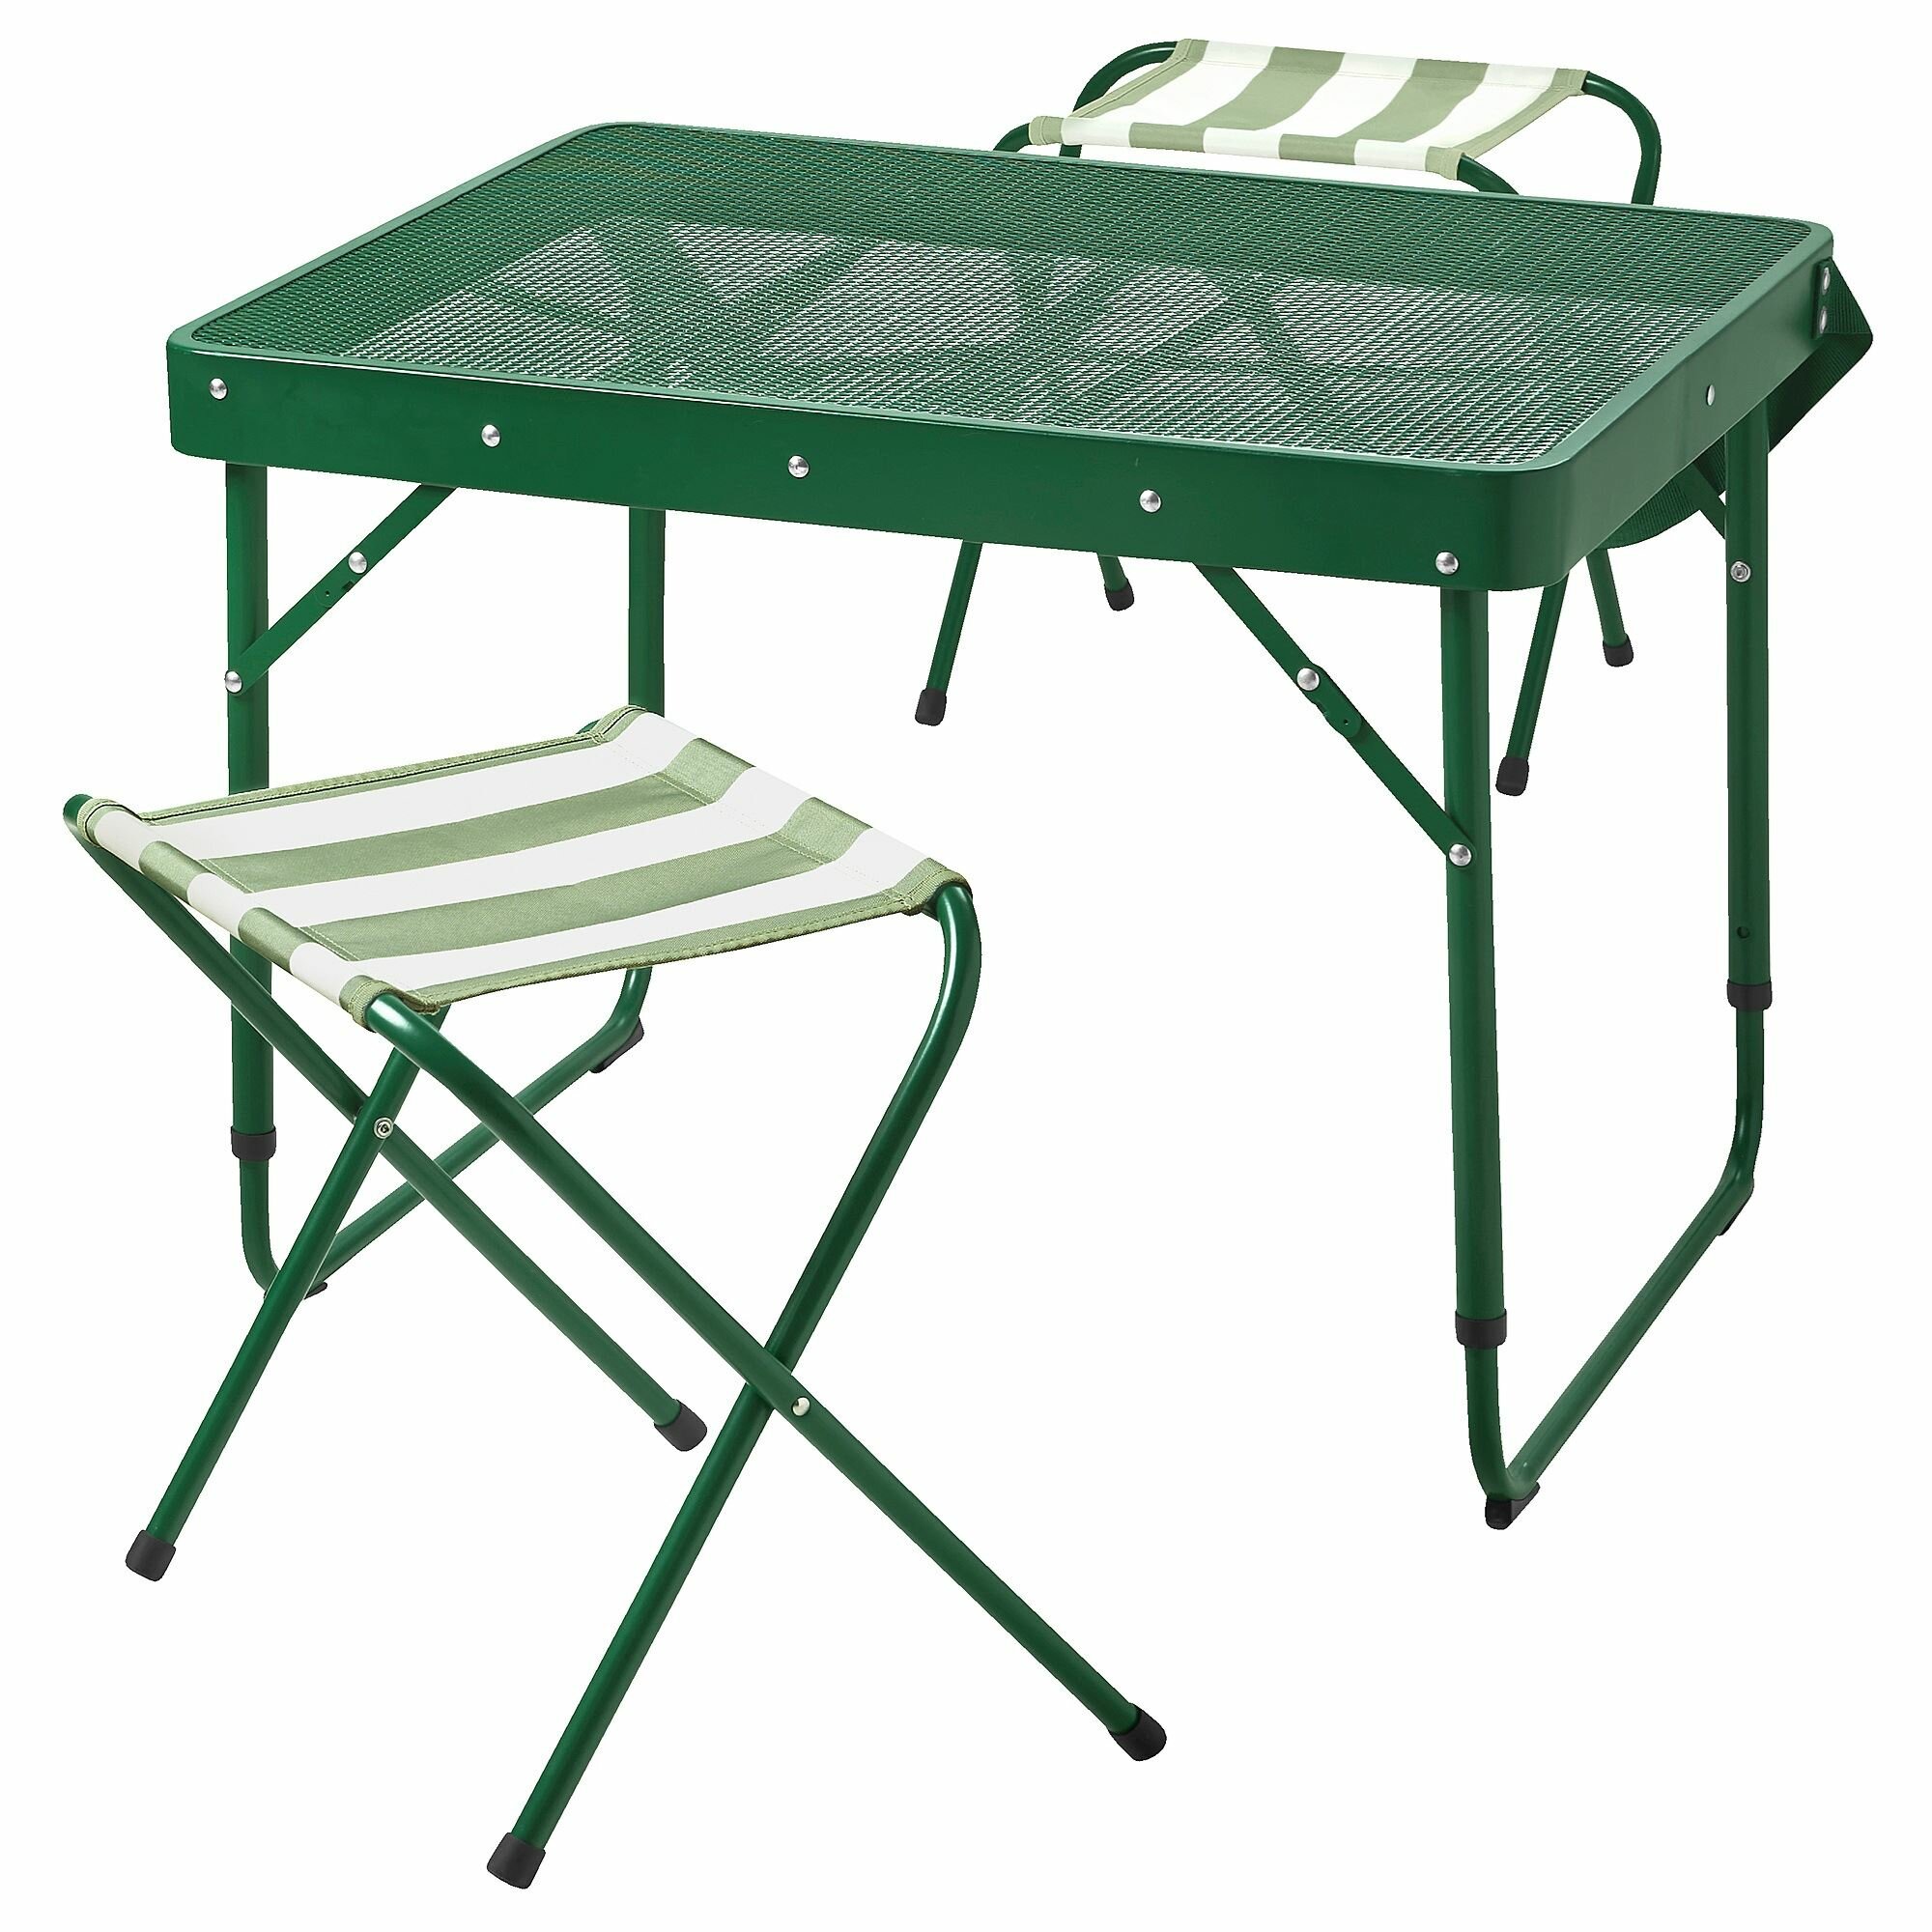 Икея / IKEA STRANDON, страндон, комплект складного стола и табуретки, зеленый, с 2 табуретками